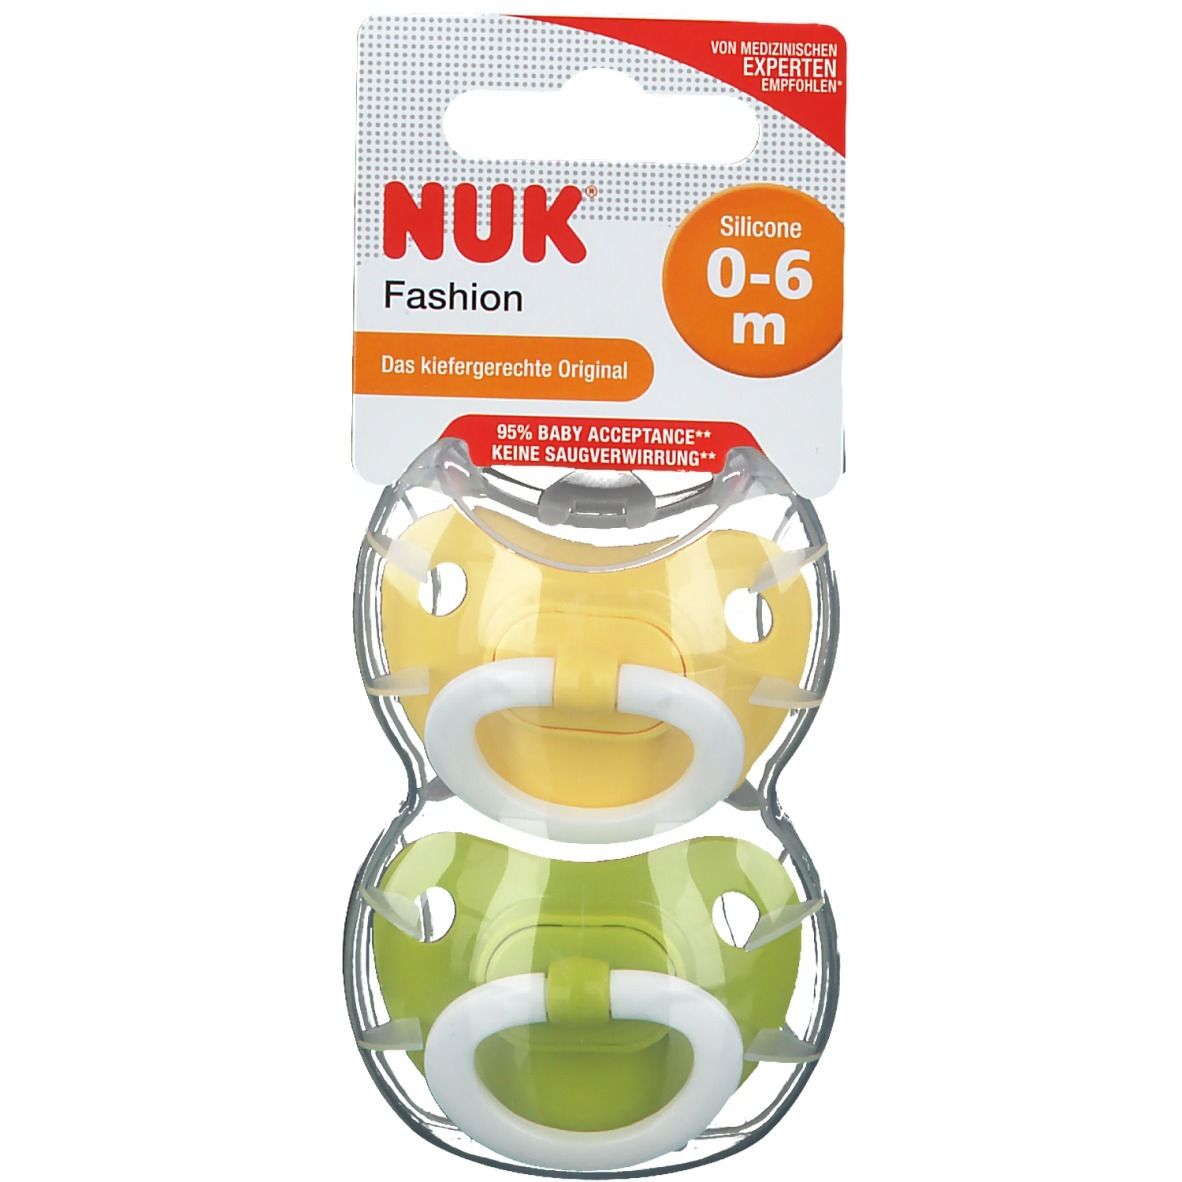 NUK® Classic Fashion Schnuller aus Silikon Größe 0 bis 6 Monaten (Farbe/Motiv nicht wählbar)